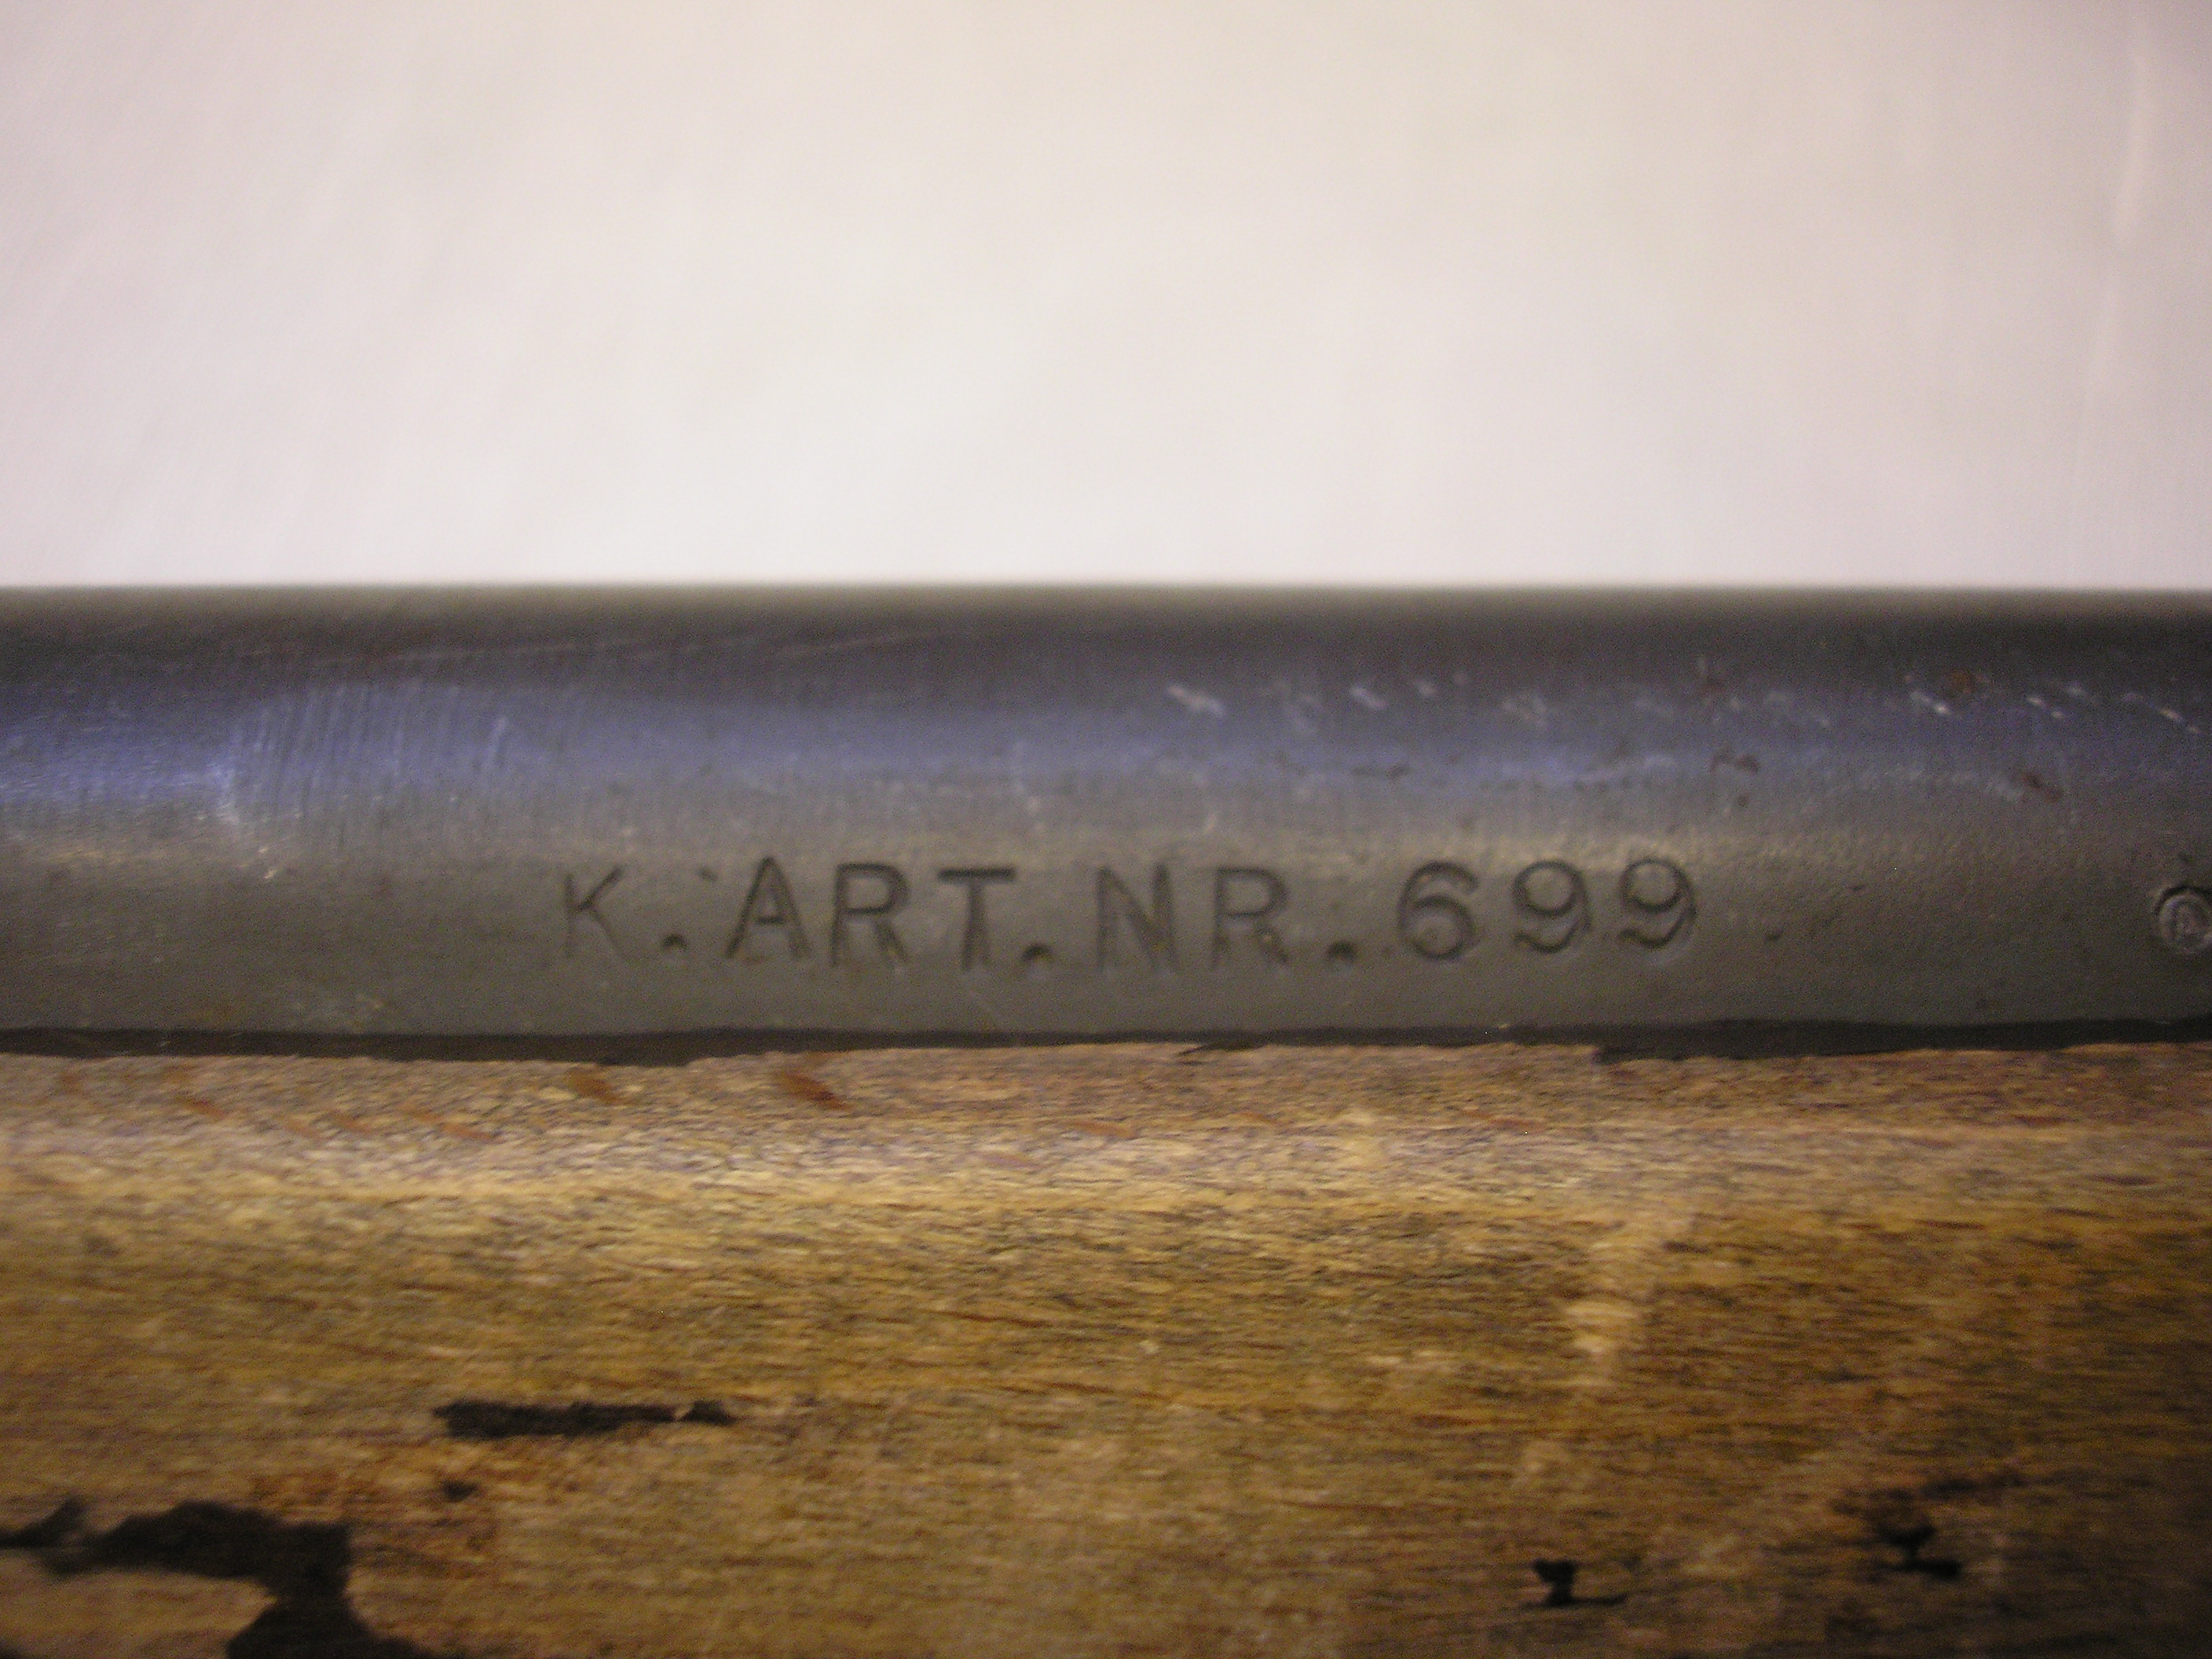 ./guns/rifle/bilder/Fektegevaer-Kongsberg-M51-KART699-7.JPG